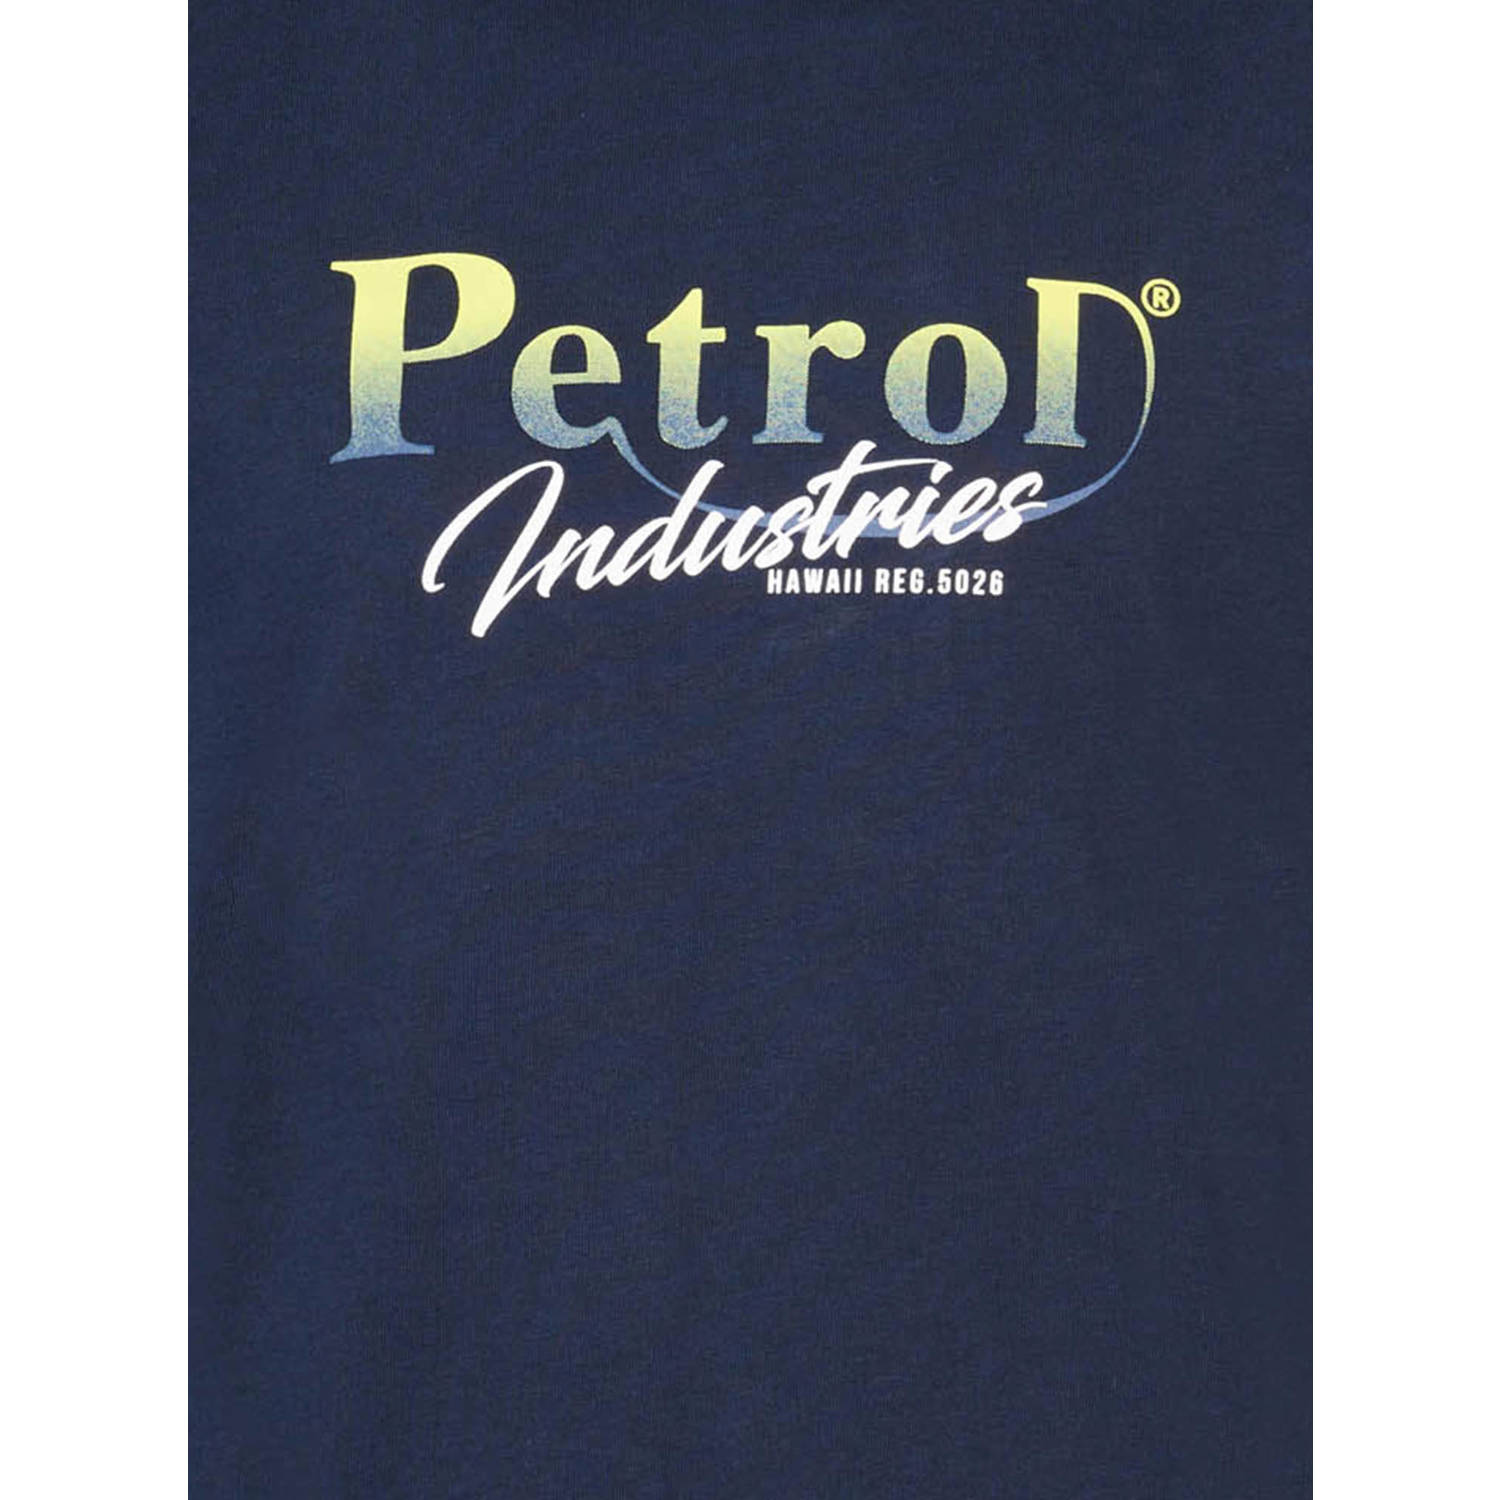 Petrol Industries T-shirt met logo navy